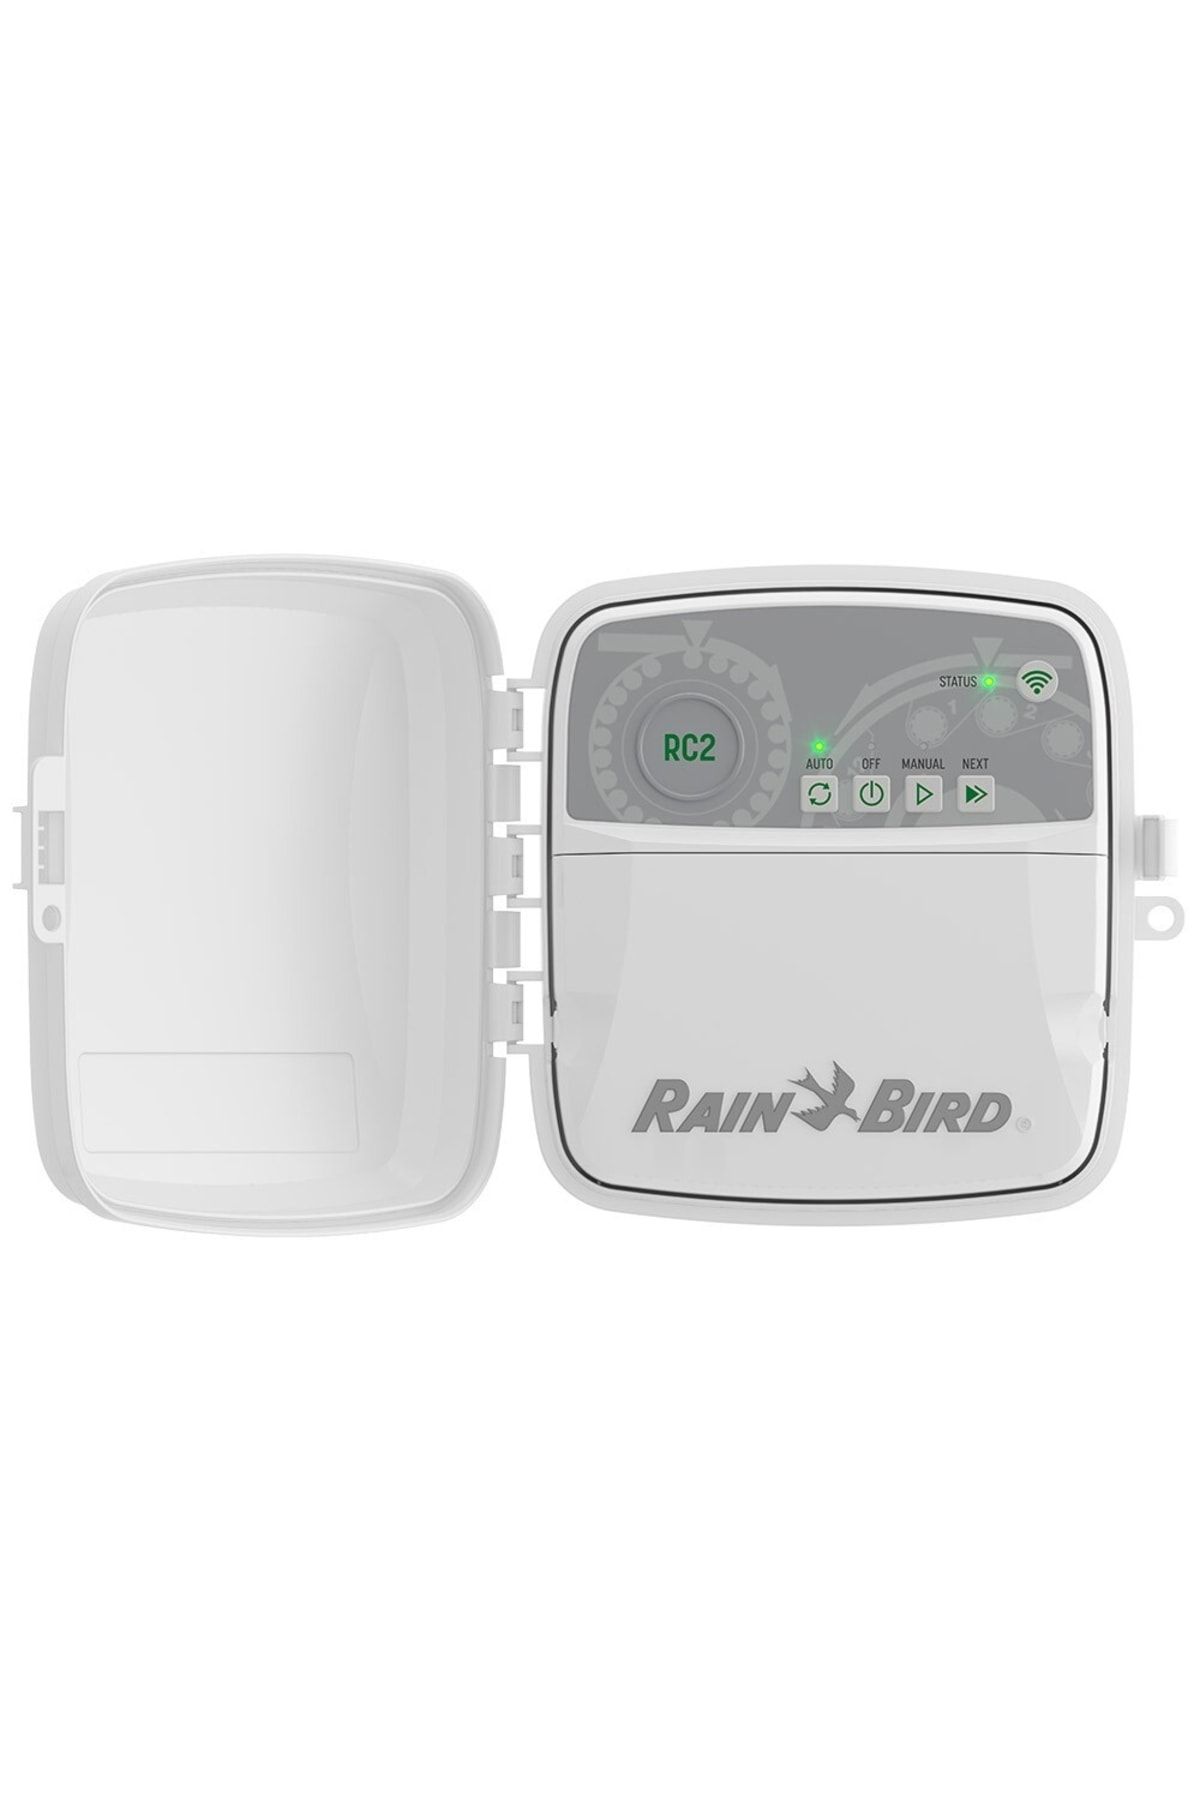 Rainbird Rain Bird RC2 Akıllı Sulama Kontrol Çözümü - 230V - Iç Mekan 8 Istasyon